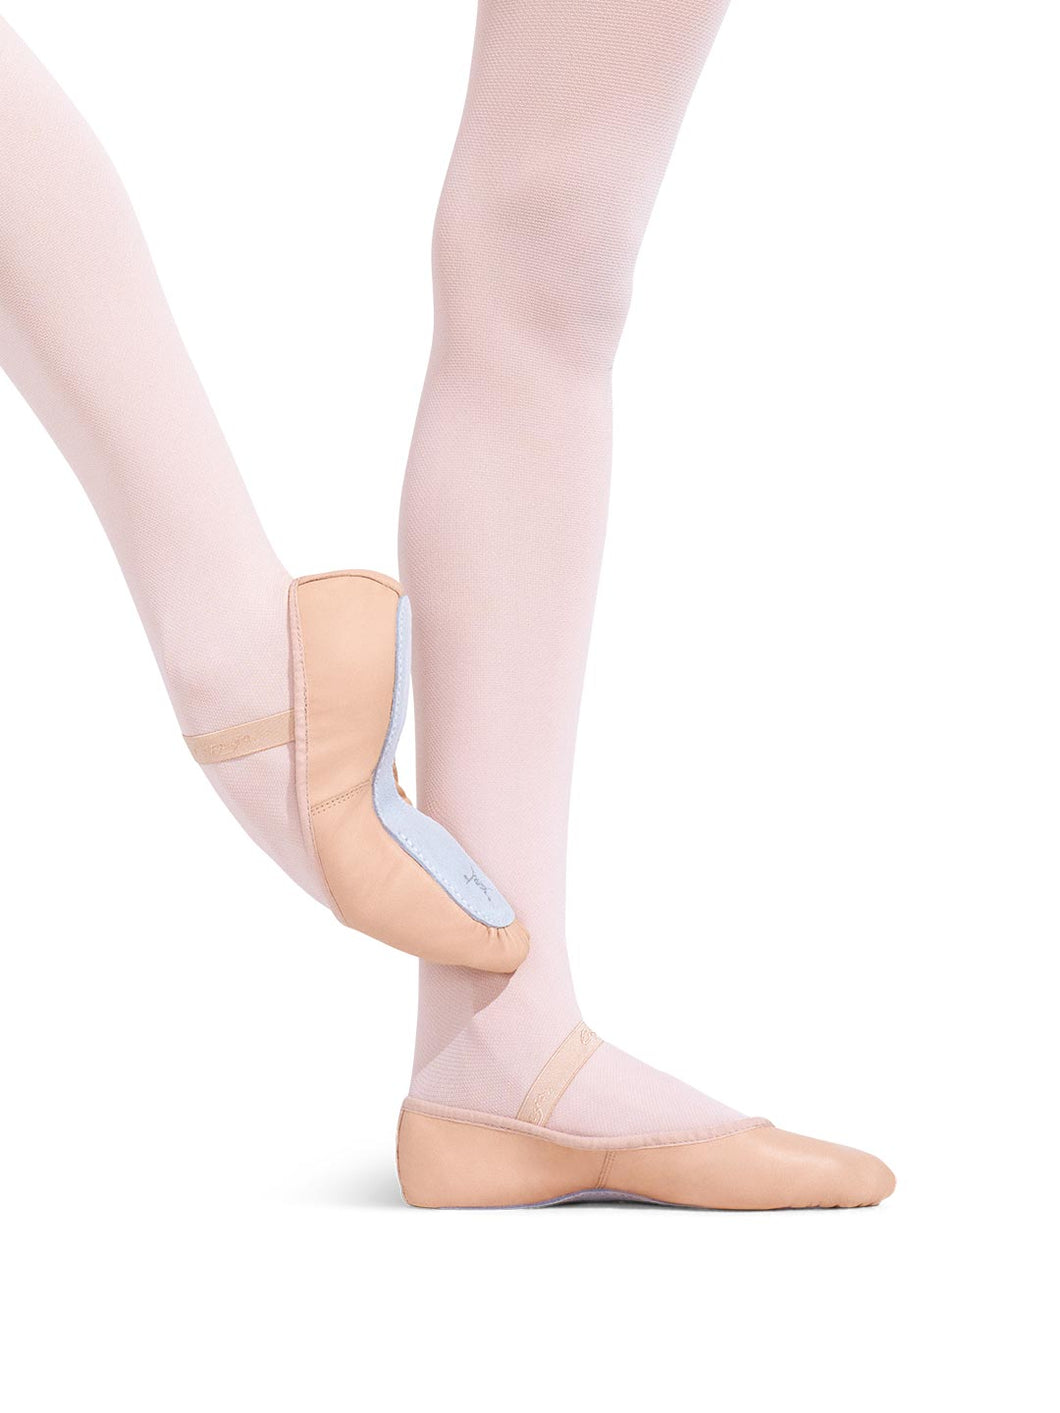 Capezio Daisy Ballet Shoe - BPK (Ballet Pink), WHT (White). BLK (Black) Leather Full Sole - Child Size 205c